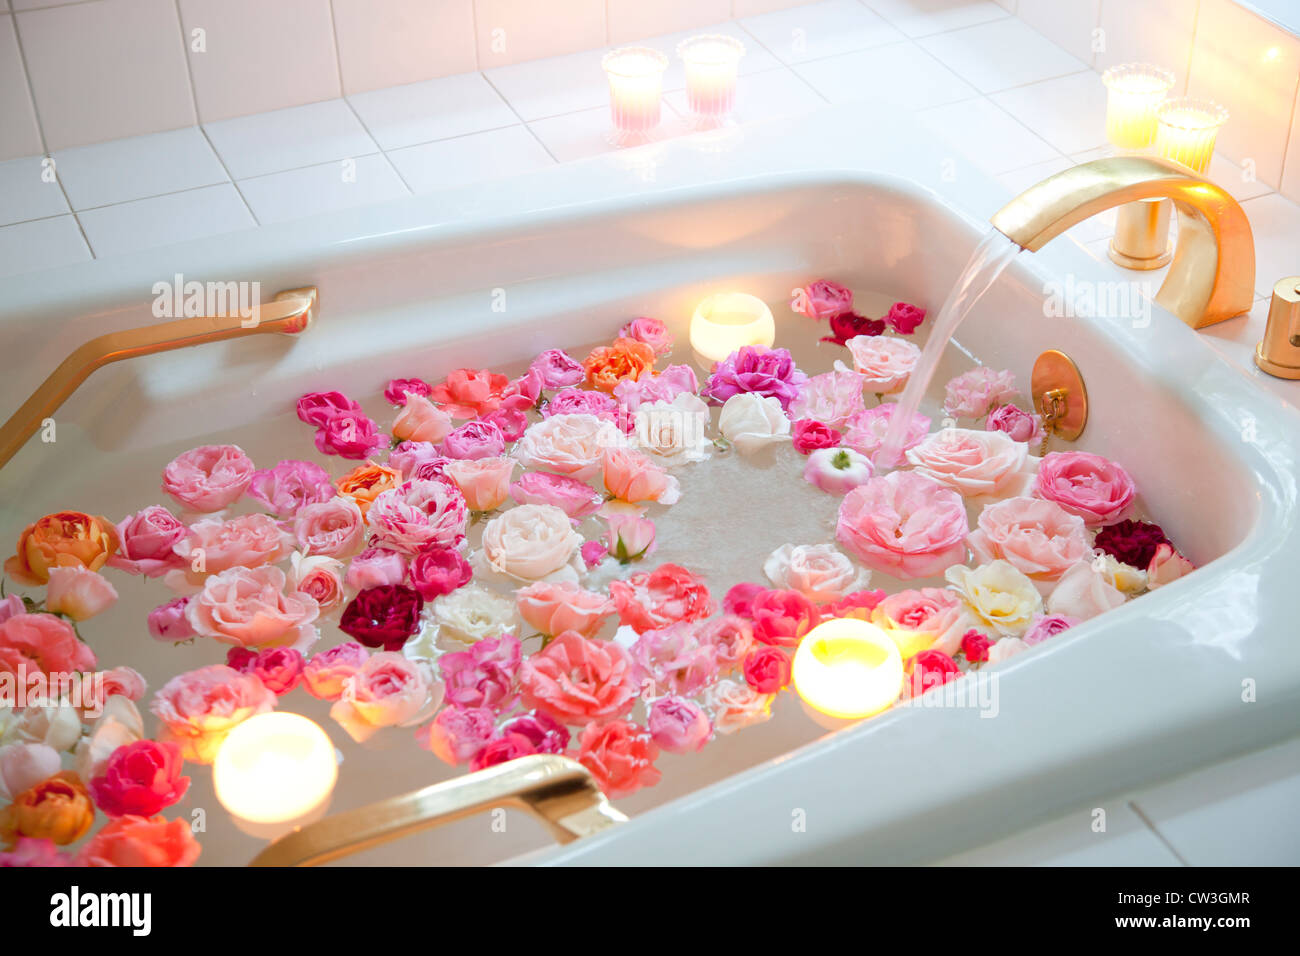 Rosen floating in der Badewanne Wasser Stockfotografie - Alamy